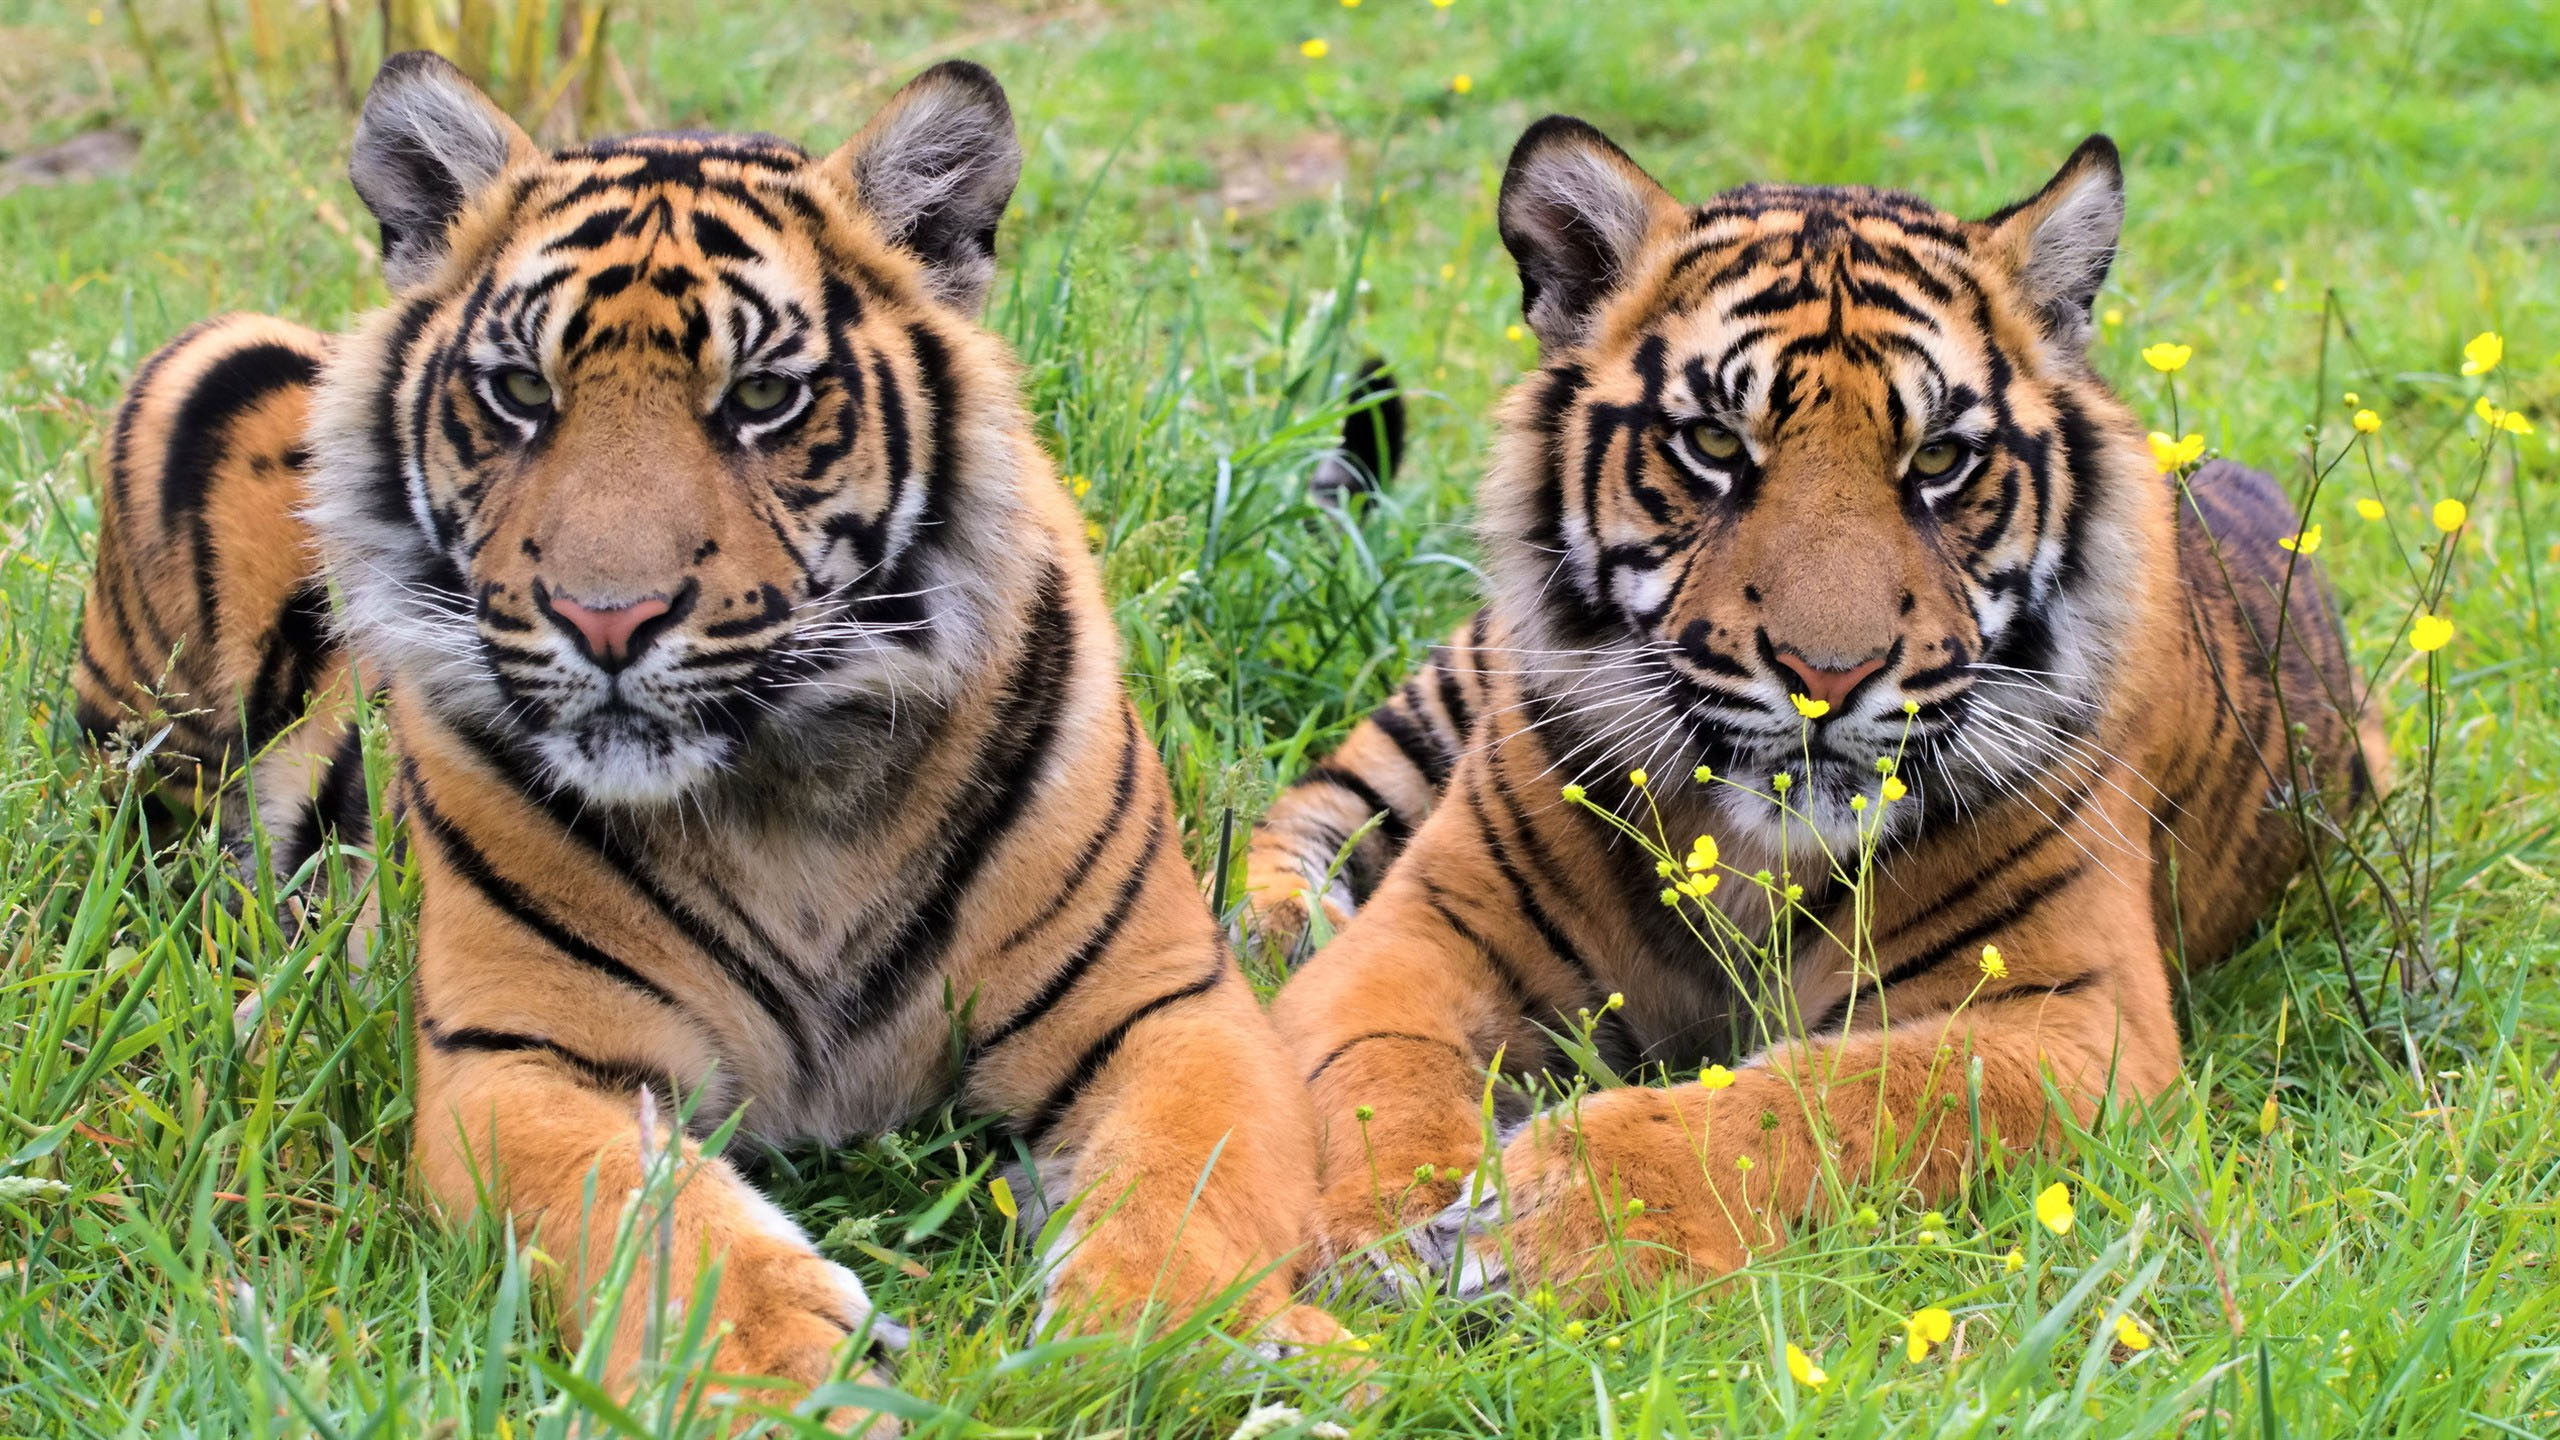 General 2560x1440 animals tiger big cats mammals